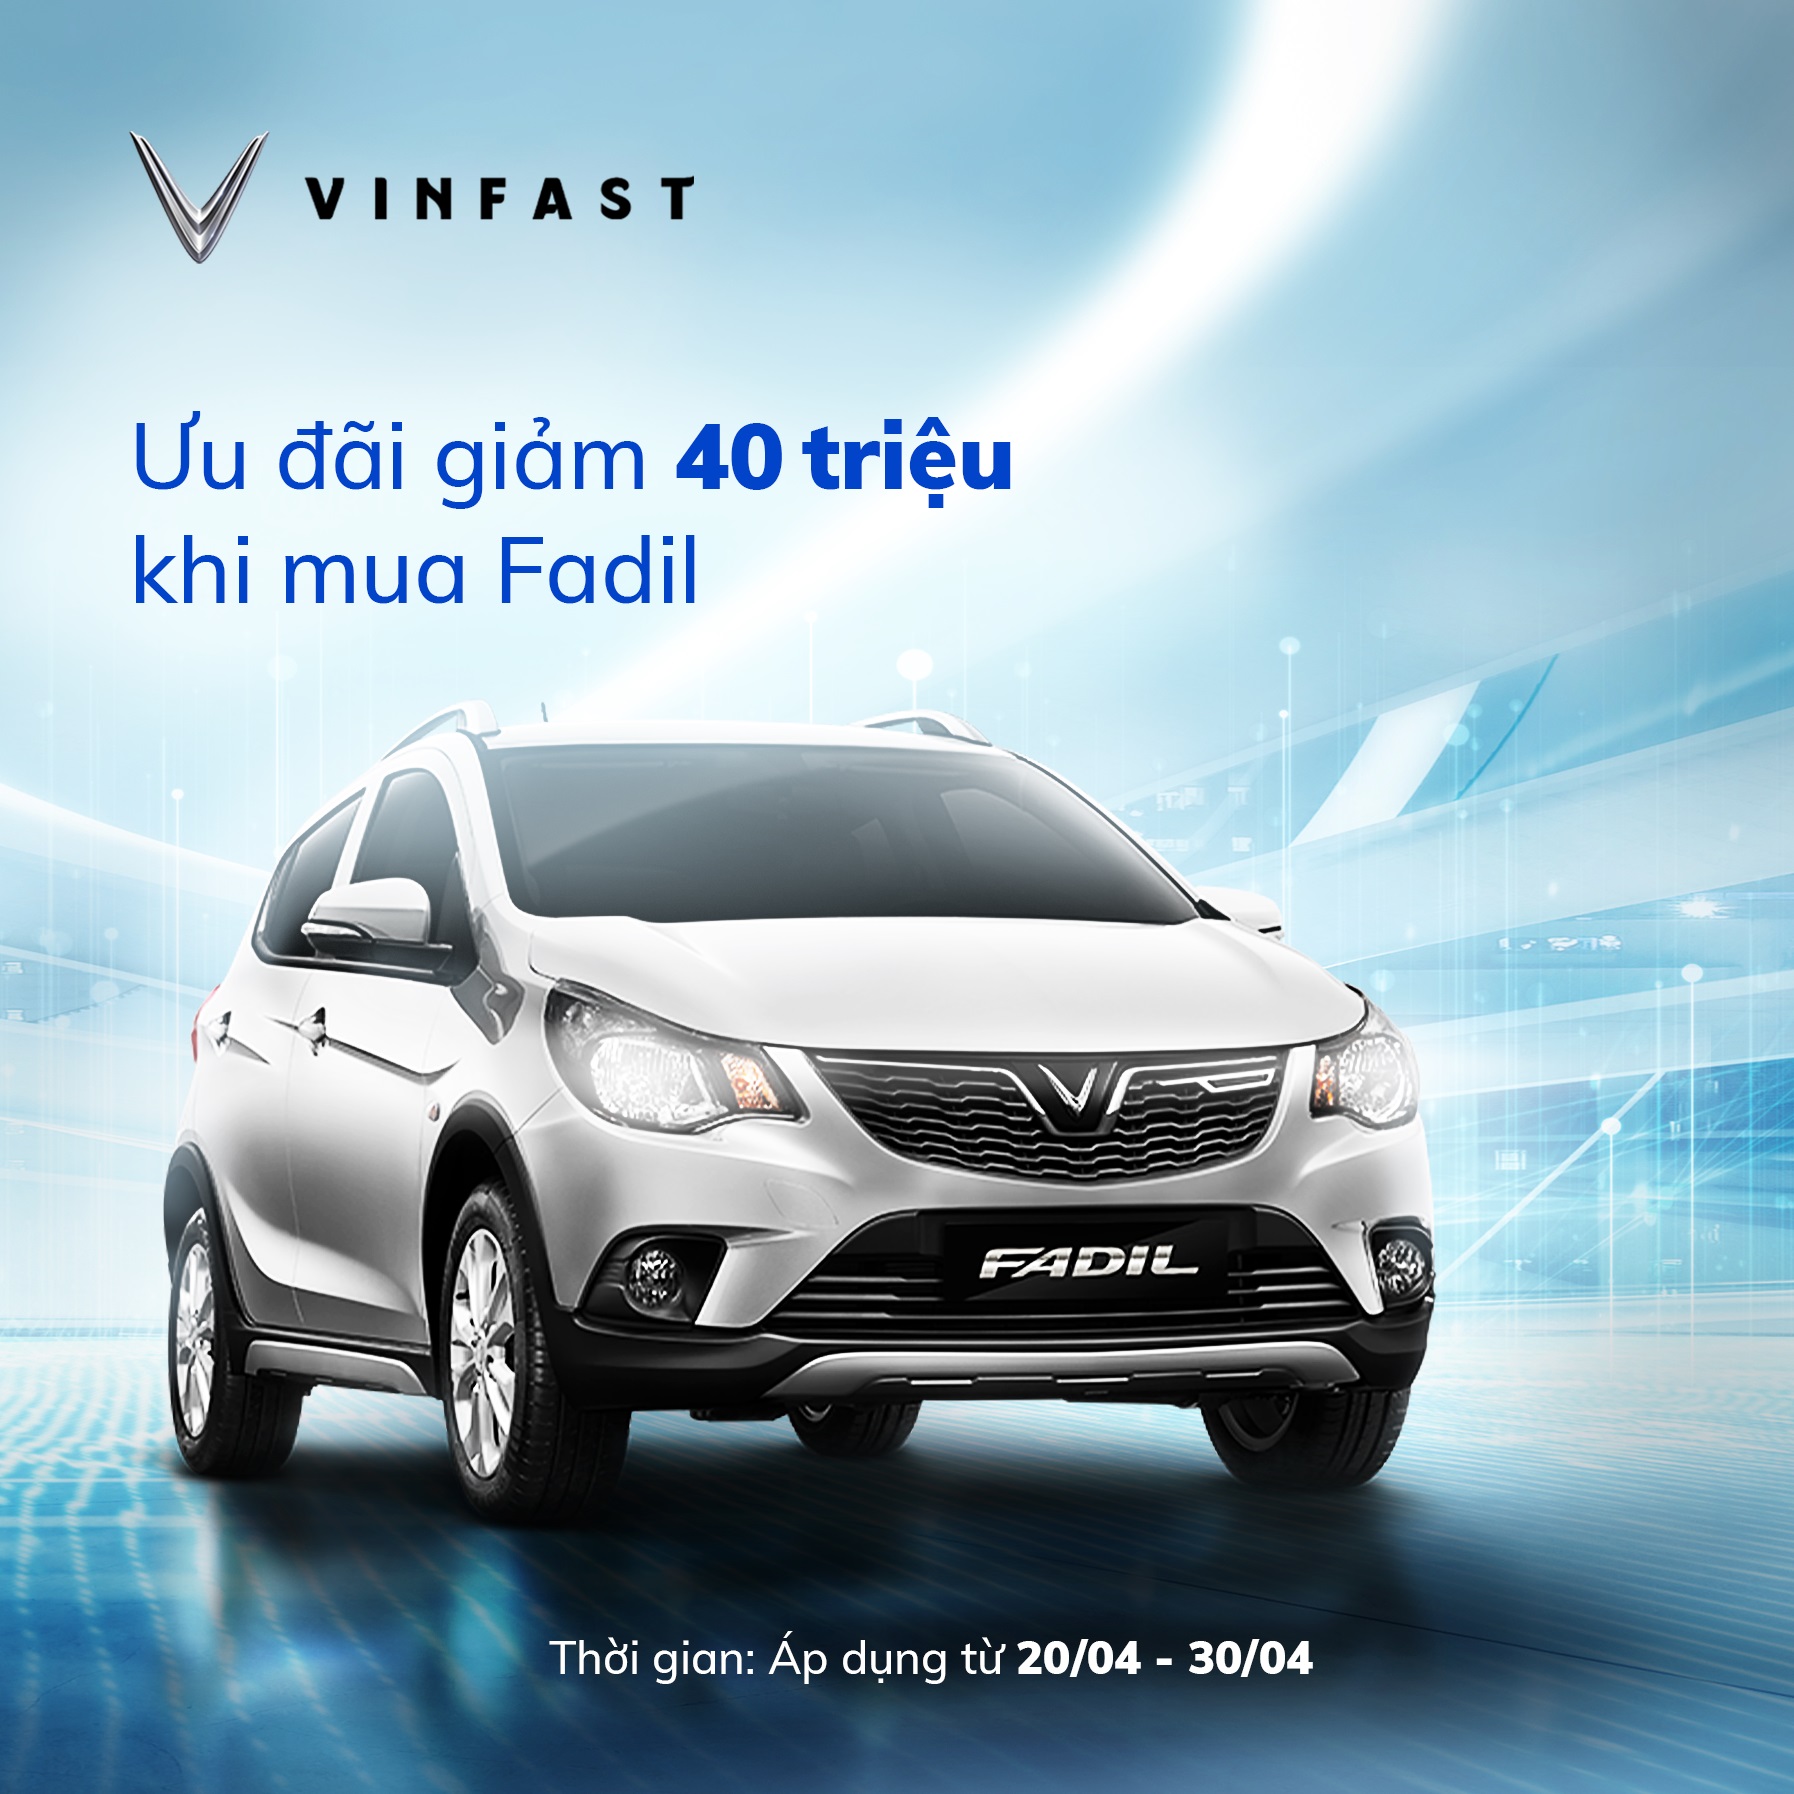 VinFast Fadil ưu đãi 40 triệu đồng trong 10 ngày cuối tháng 4 - Ảnh 1.